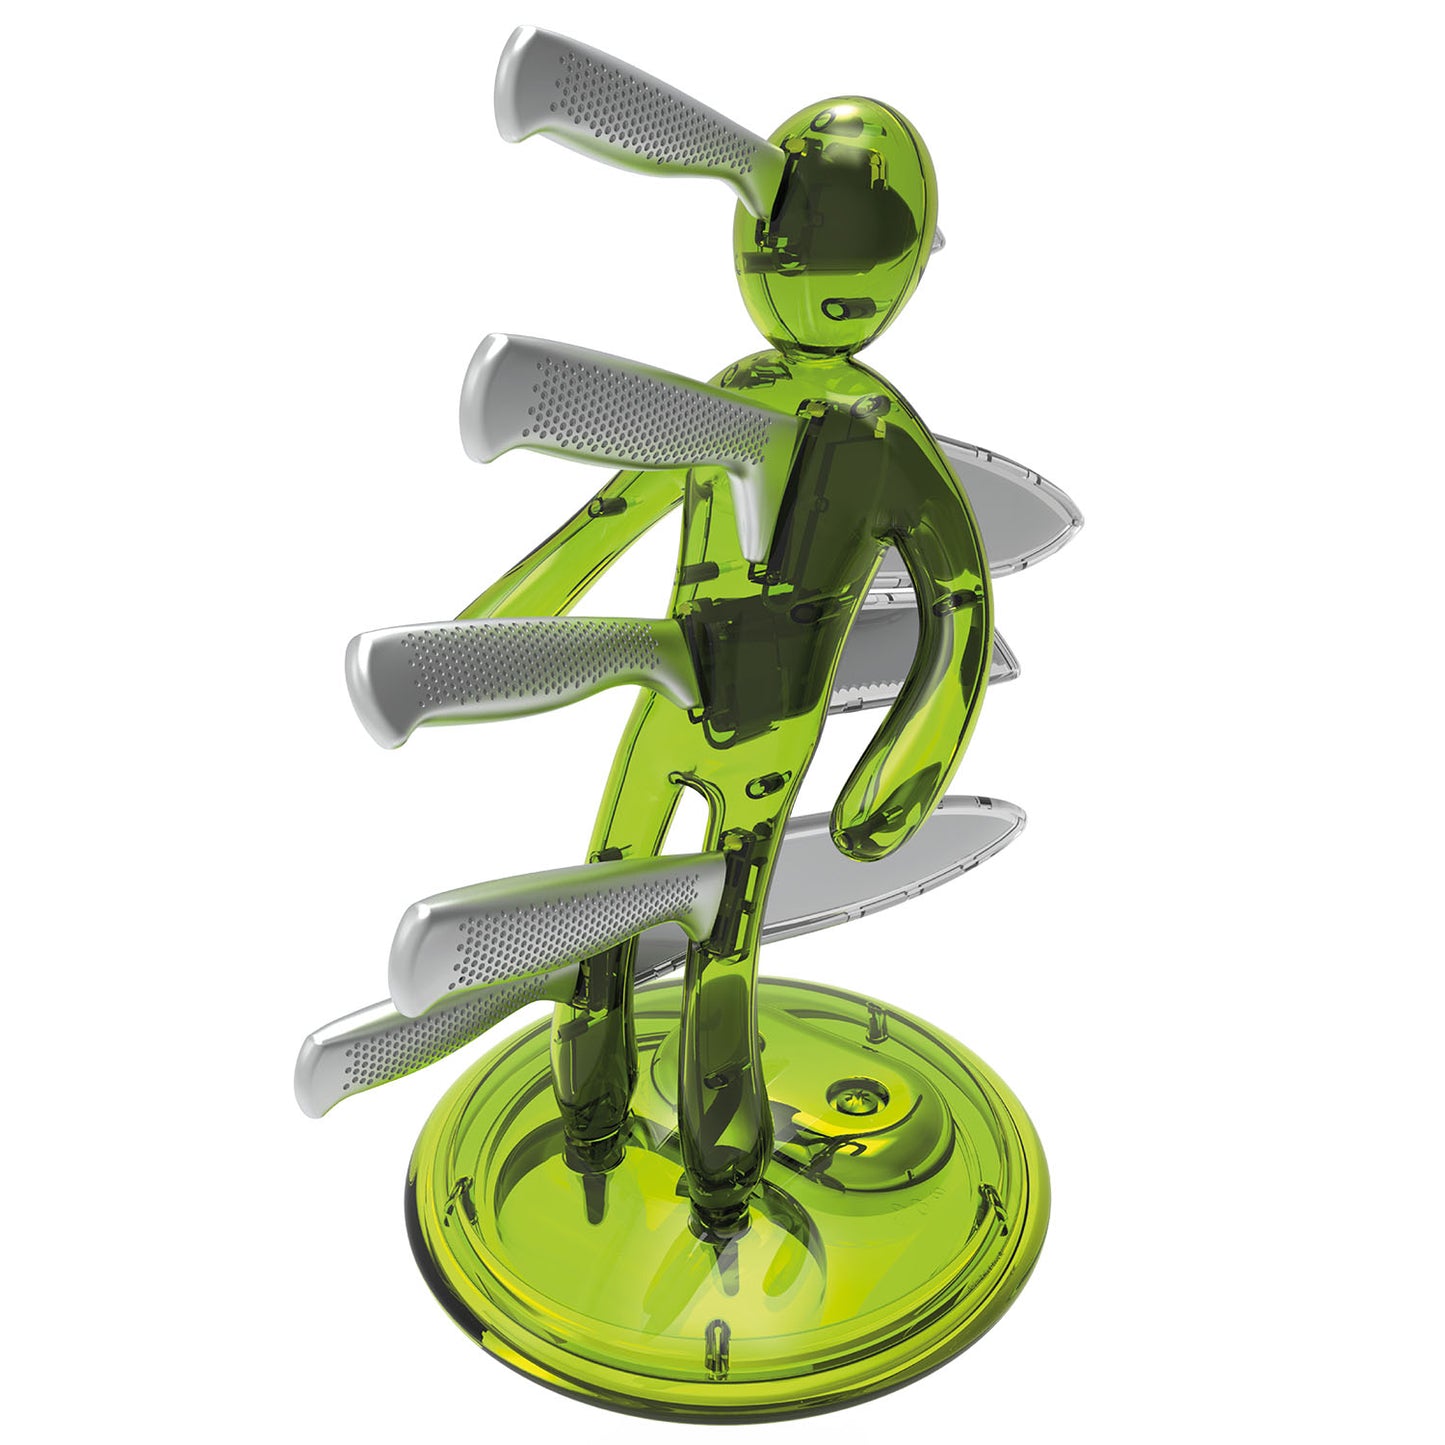 Voodoo/TheEx “Classic Edition” 刀具套装 - 绿色半透明塑料刀架